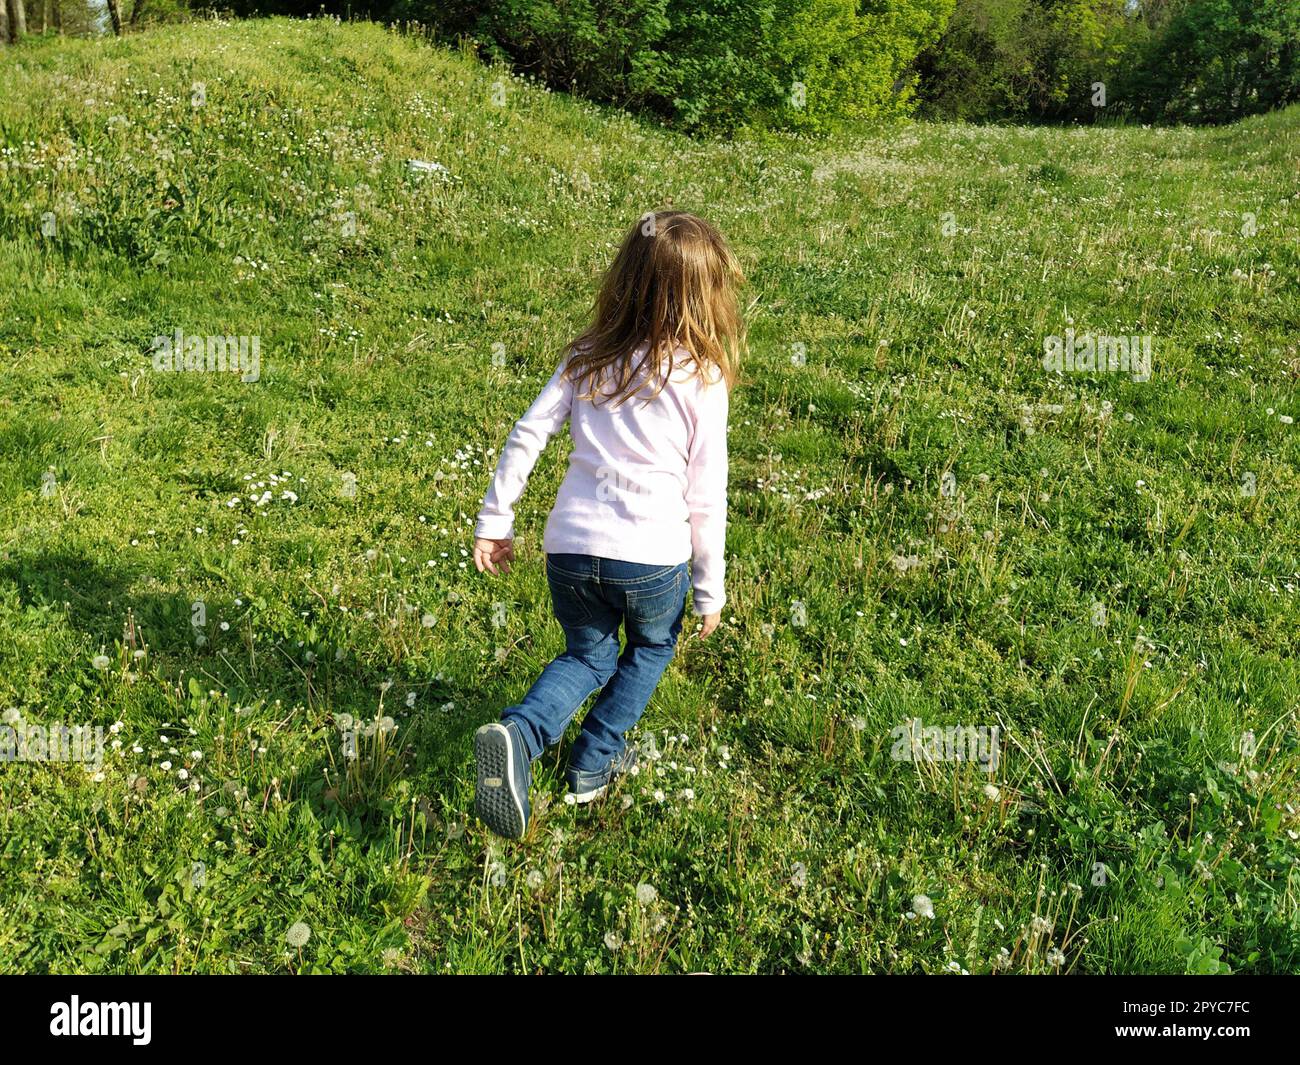 Das Mädchen rennt mit getrimmtem grünen Gras über das Feld. Das Kind trägt eine weiße Bluse und eine blaue Jeans. Sommerabend. Kinderspaß. Mädchen mit langen blonden Haaren Stockfoto